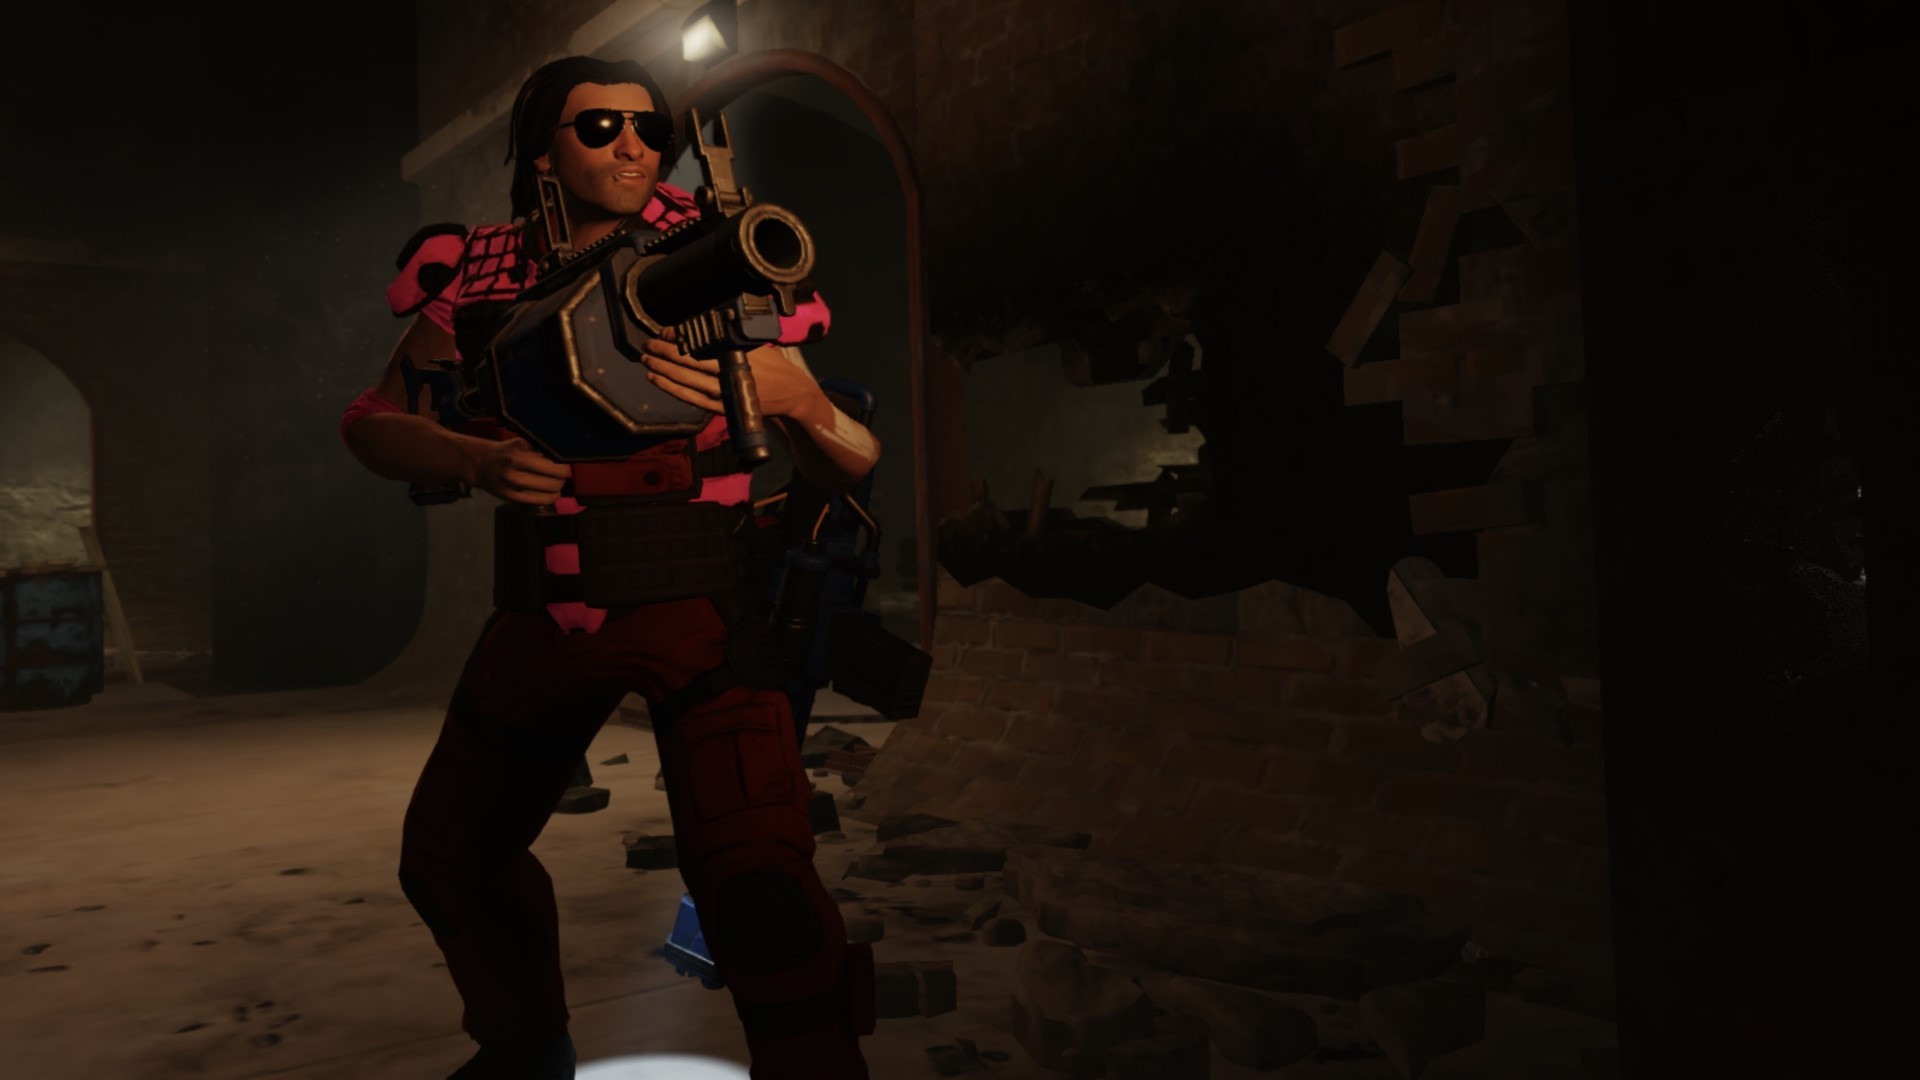 เกมกลยุทธ์มือถือที่ดีที่สุด: คอลเลกชัน XCOM 2 ภาพแสดงให้เห็นชายคนหนึ่งที่มีปืนขนาดใหญ่ยืนอยู่ในทางเดินหิน